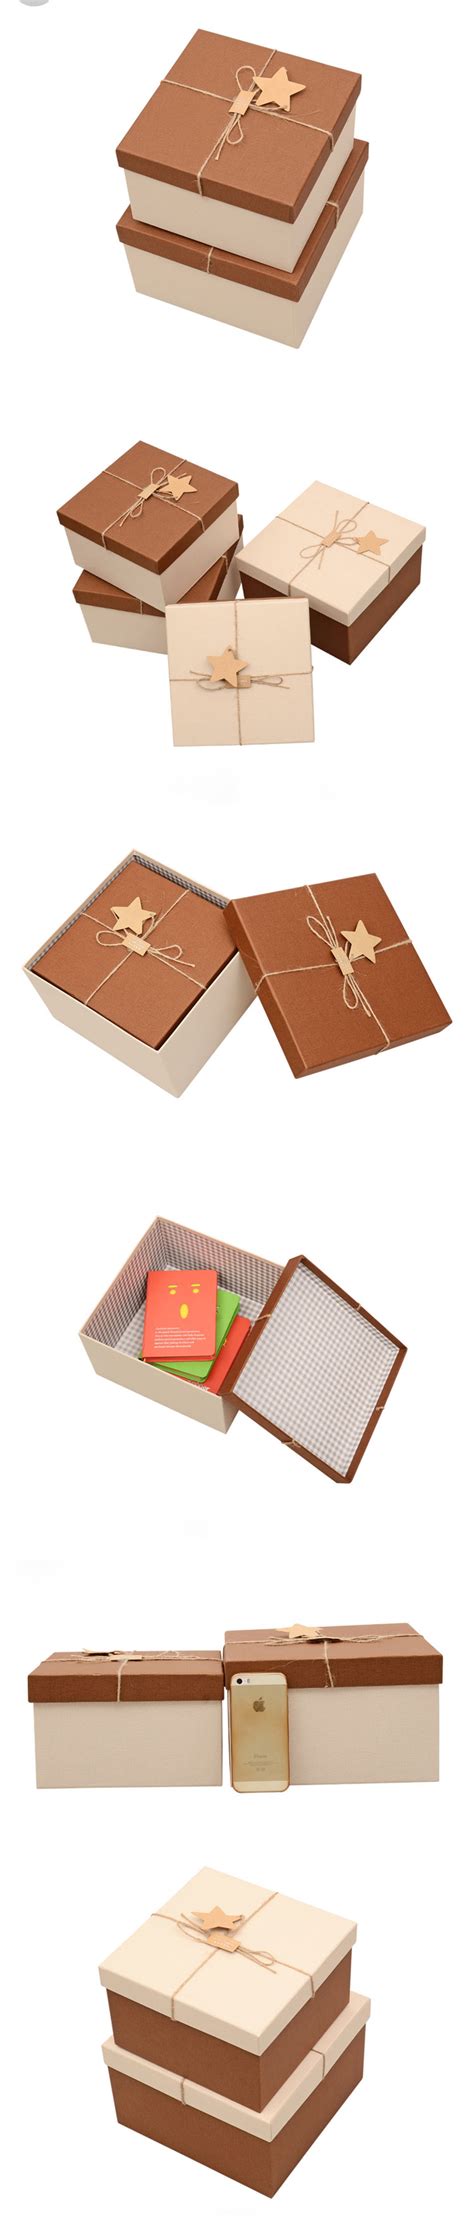 礼品盒定制/精装盒印刷/礼品包装盒定制，根据您的要求，再复杂的礼品总有一款适合您的礼品包装盒定制款式 。 - 深圳市海伦印刷包装有限公司